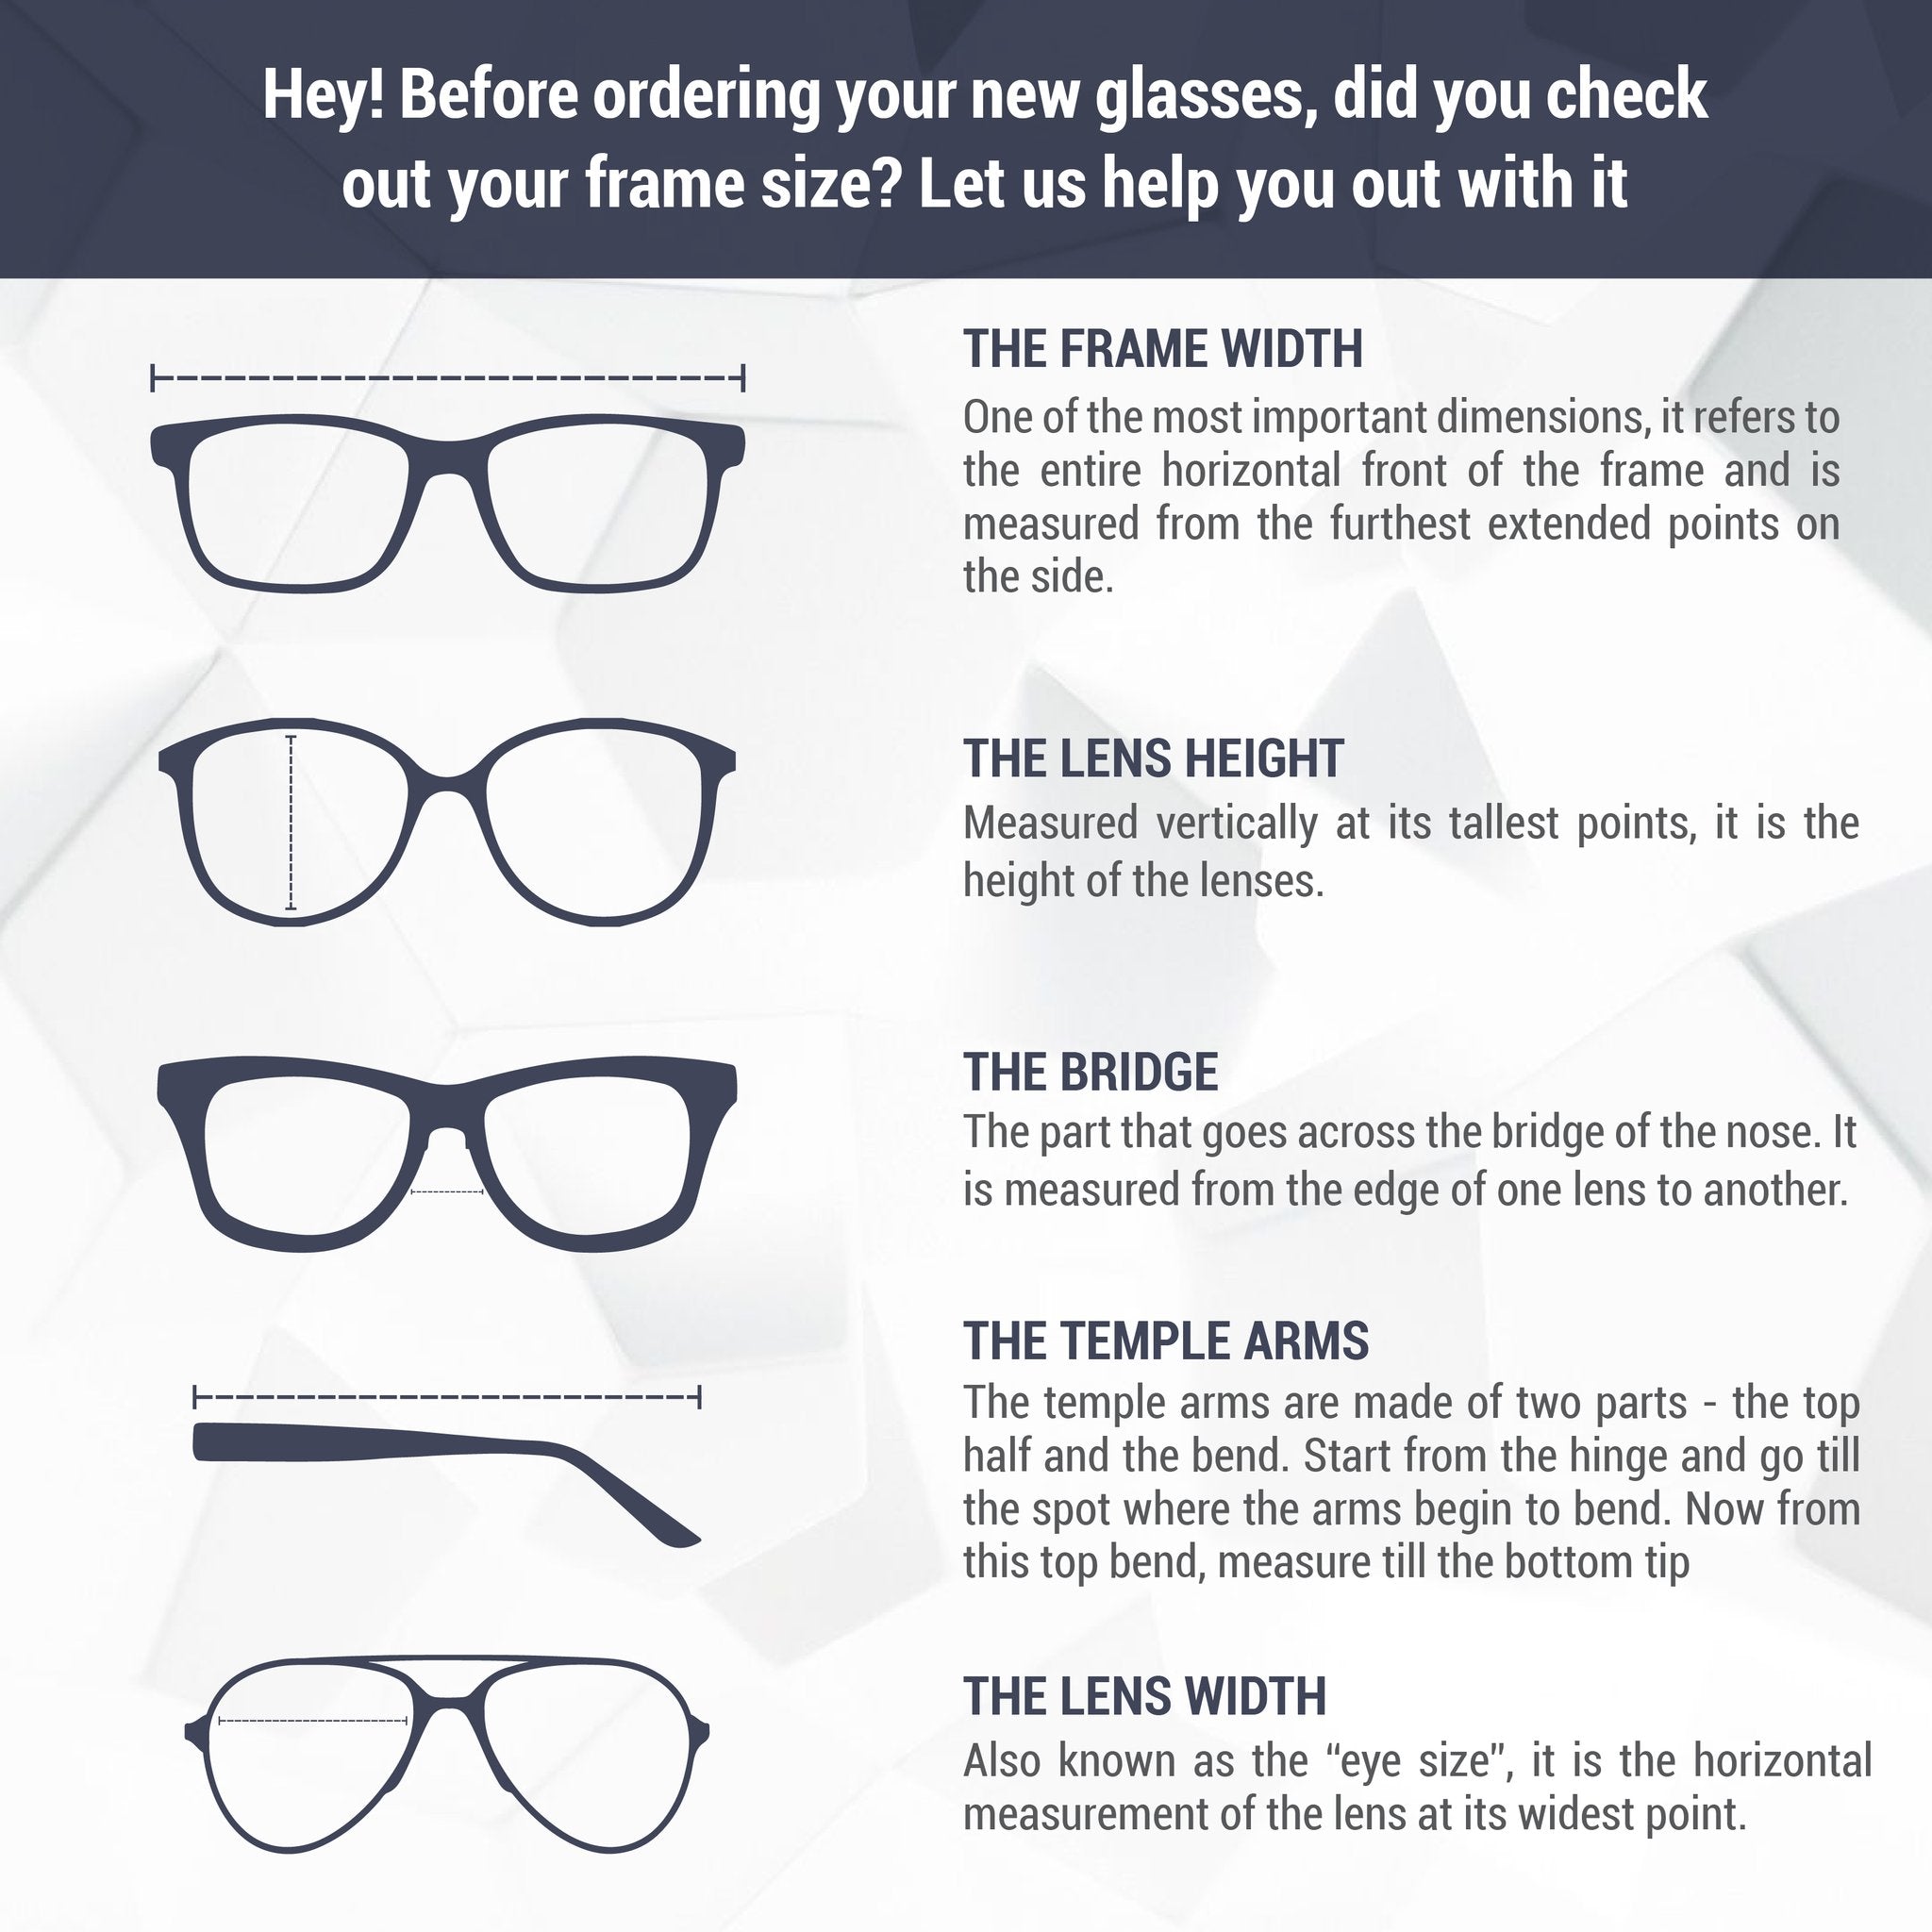 Monture de lunettes Jimmy Choo | Modèle JC146